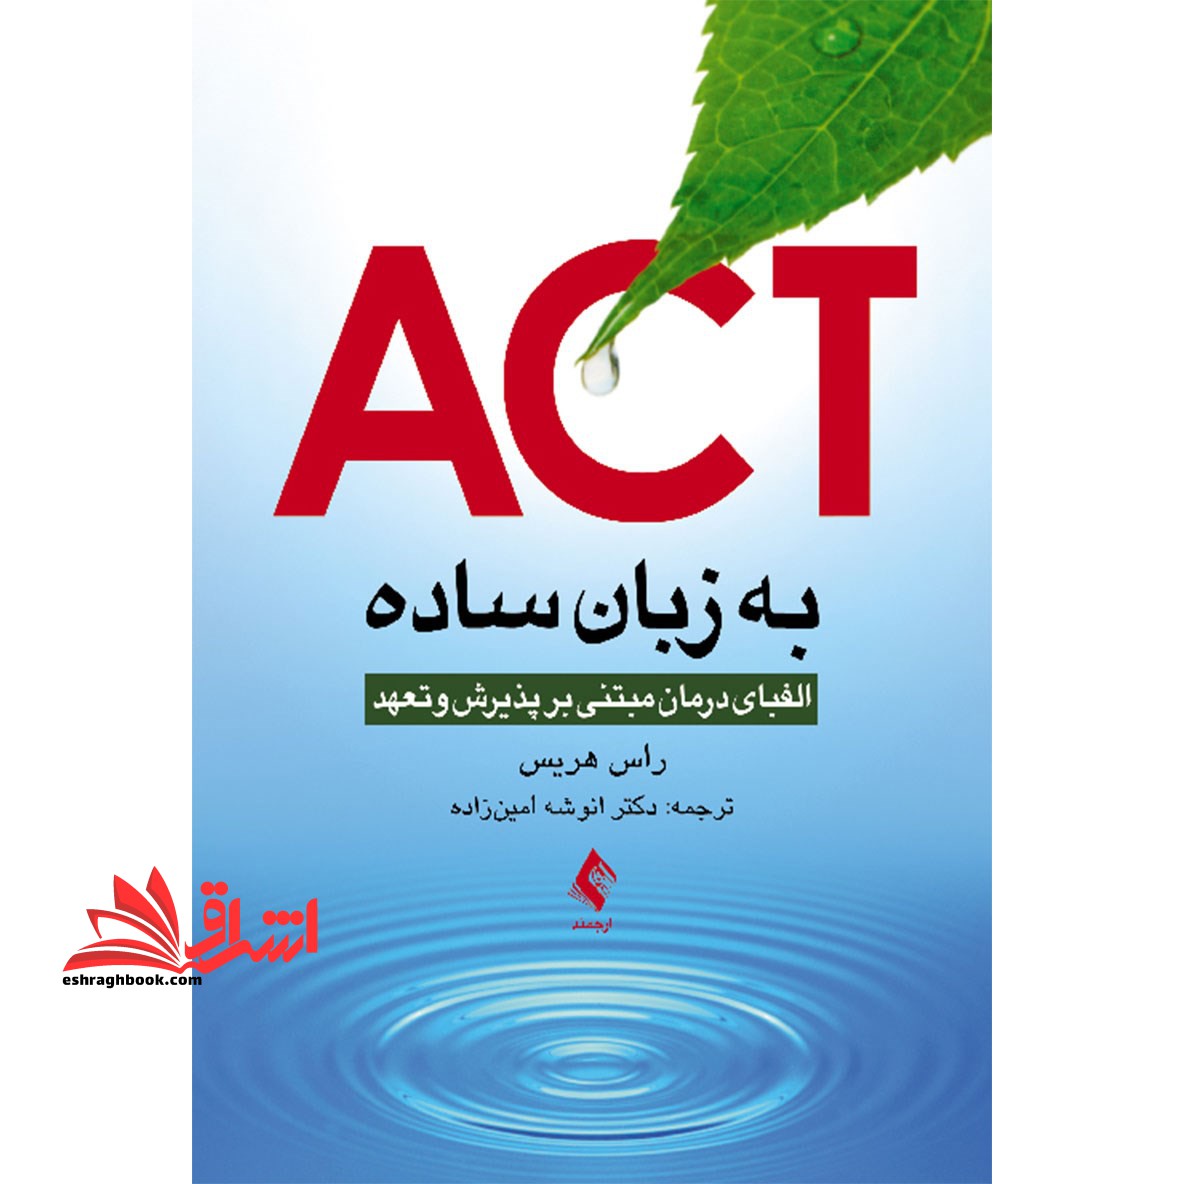 ACT اکت به زبان ساده: الفبای درمان مبتنی بر پذیرش و تعهد